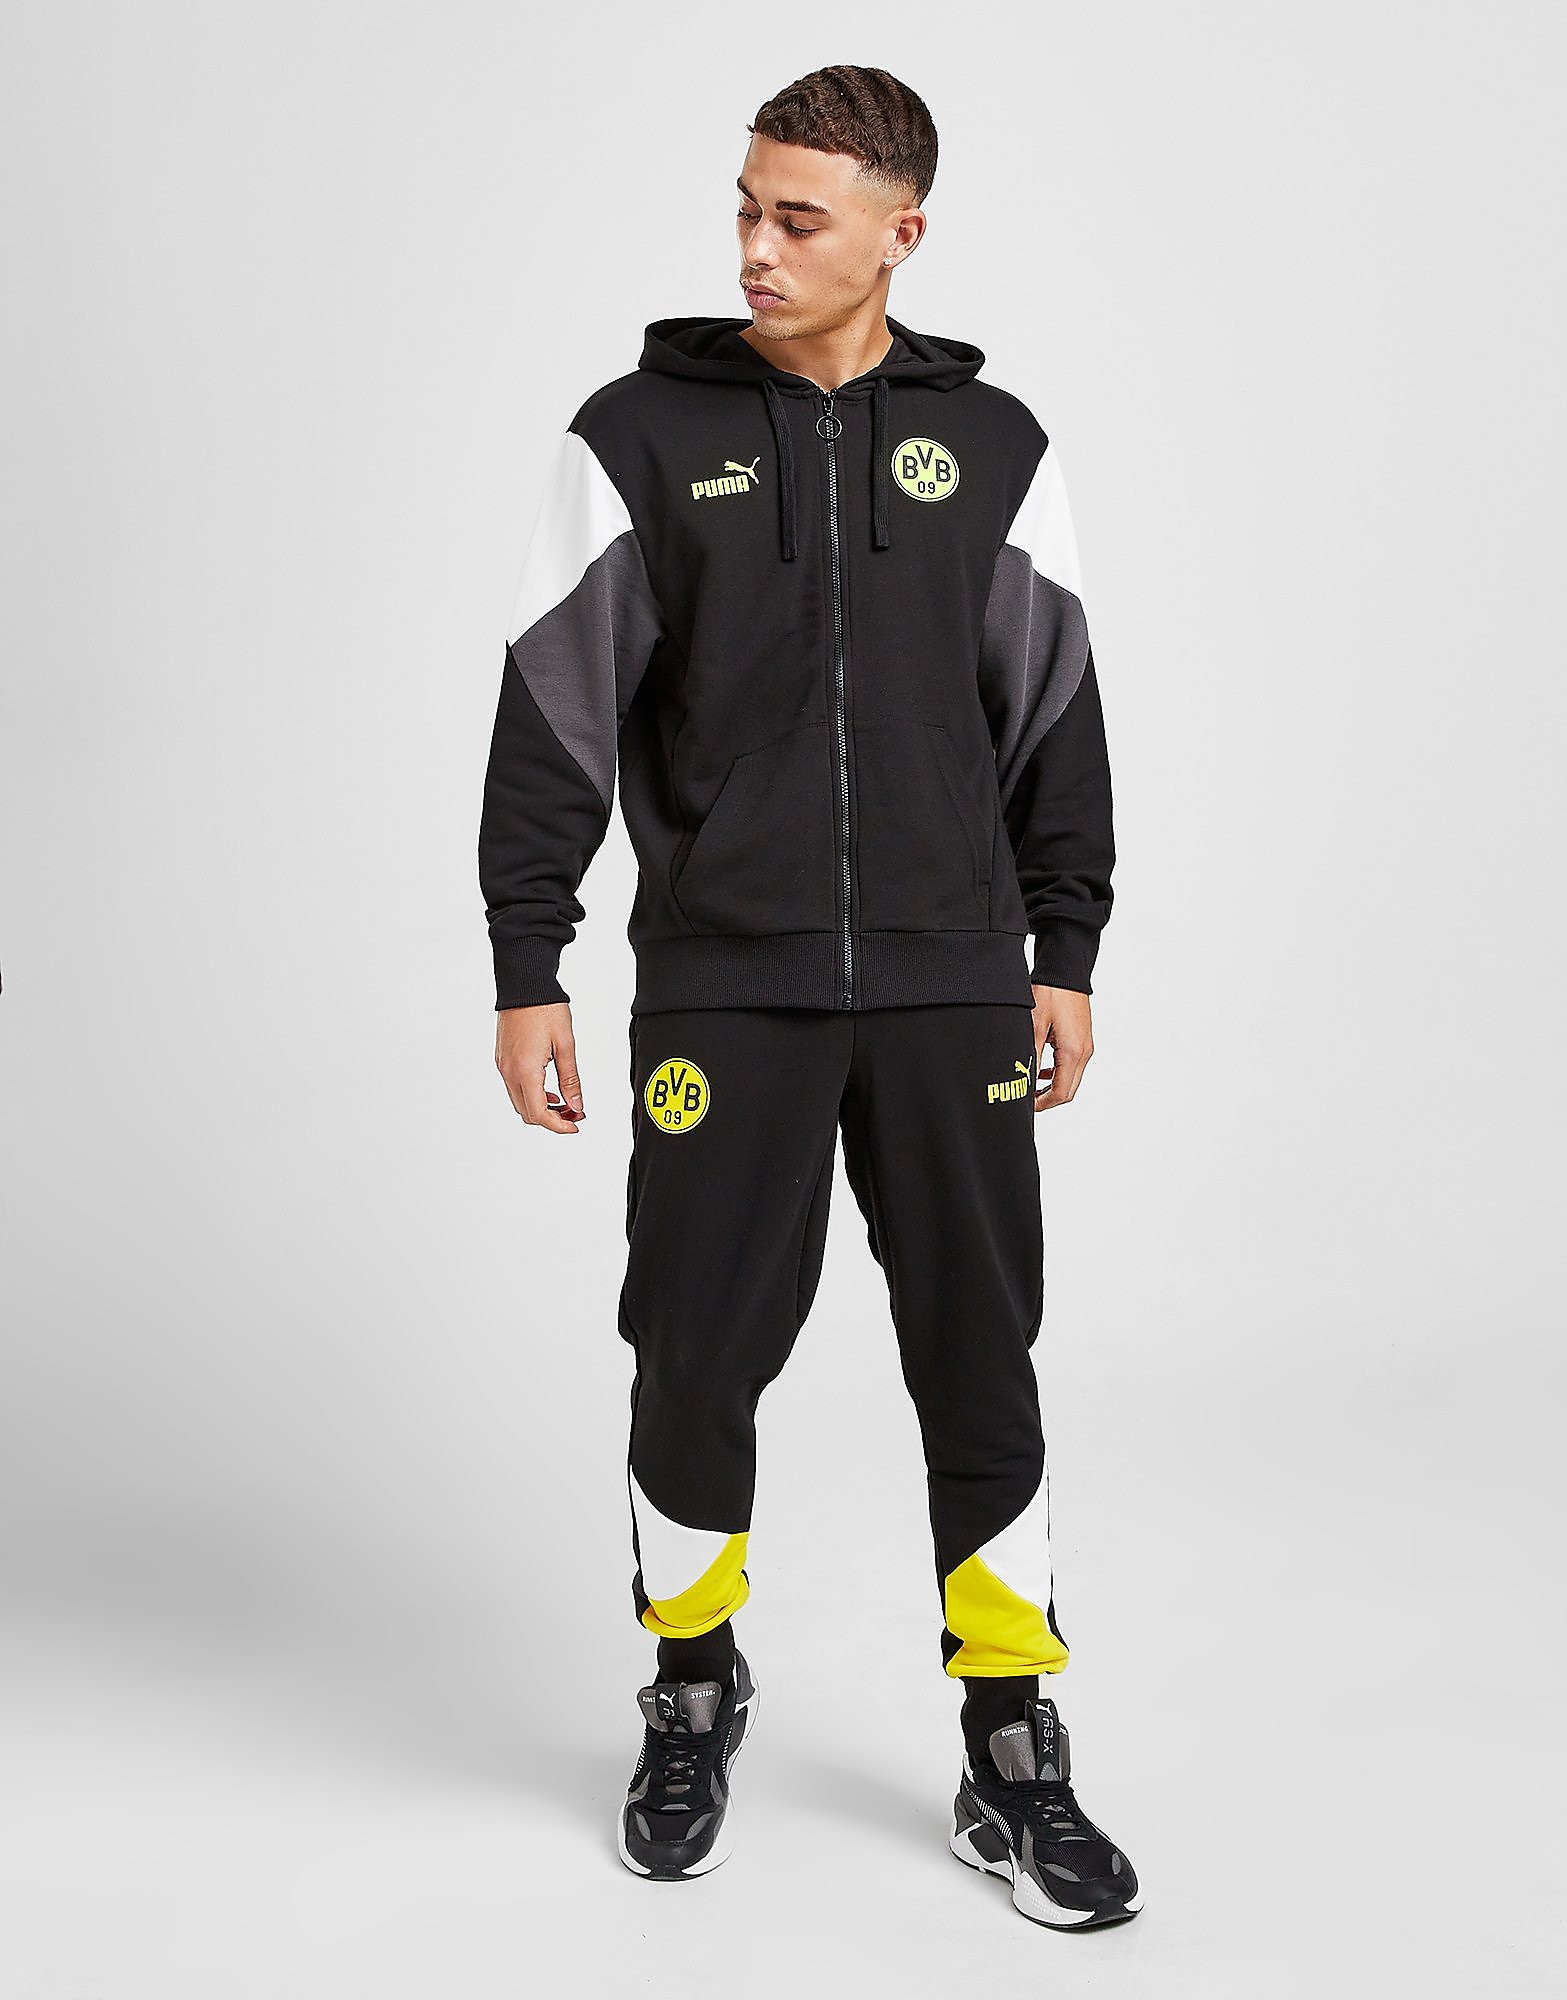 

Puma Borussia Dortmund Culture Joggers - Black - Mens, Black